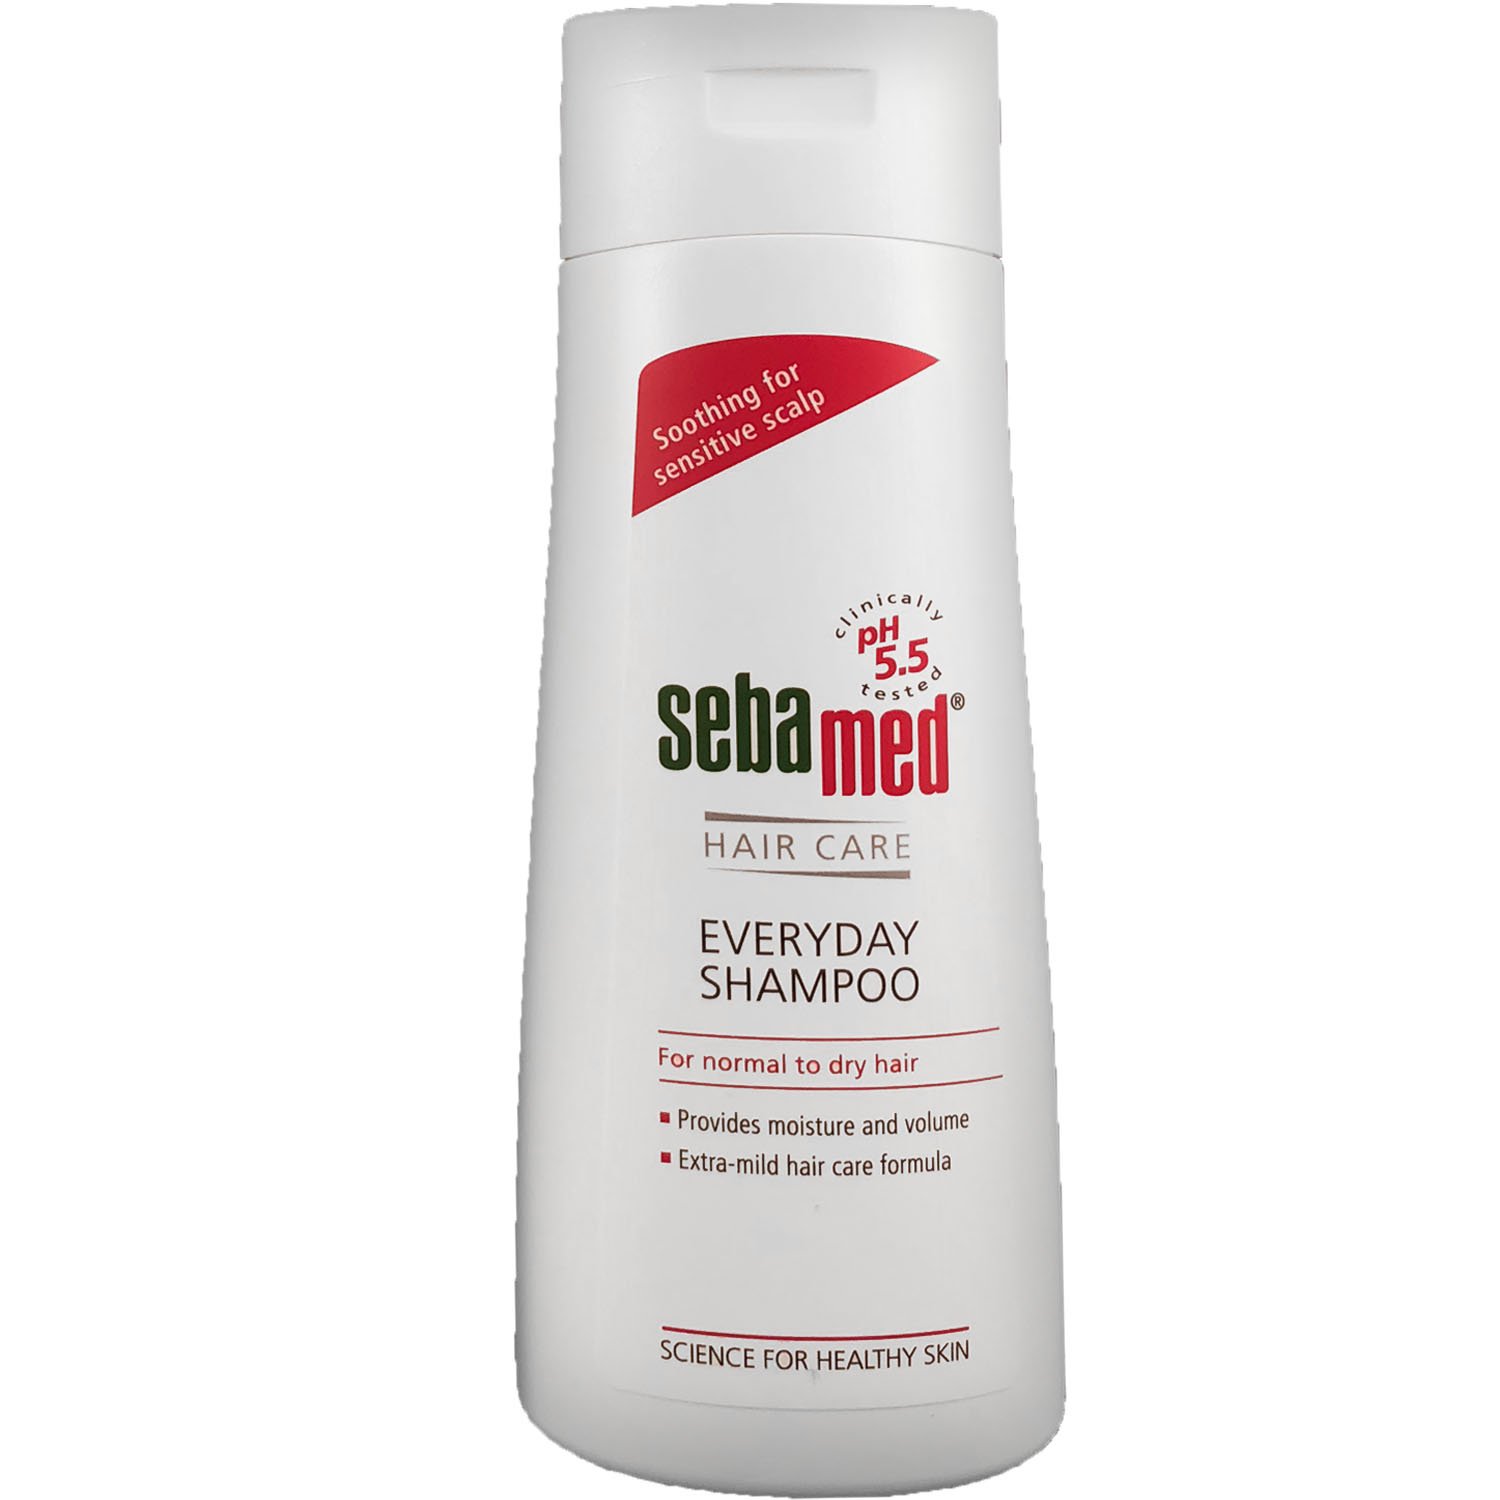 Шампунь Sebamed Hair Care для щоденного використання, 200 мл - фото 1